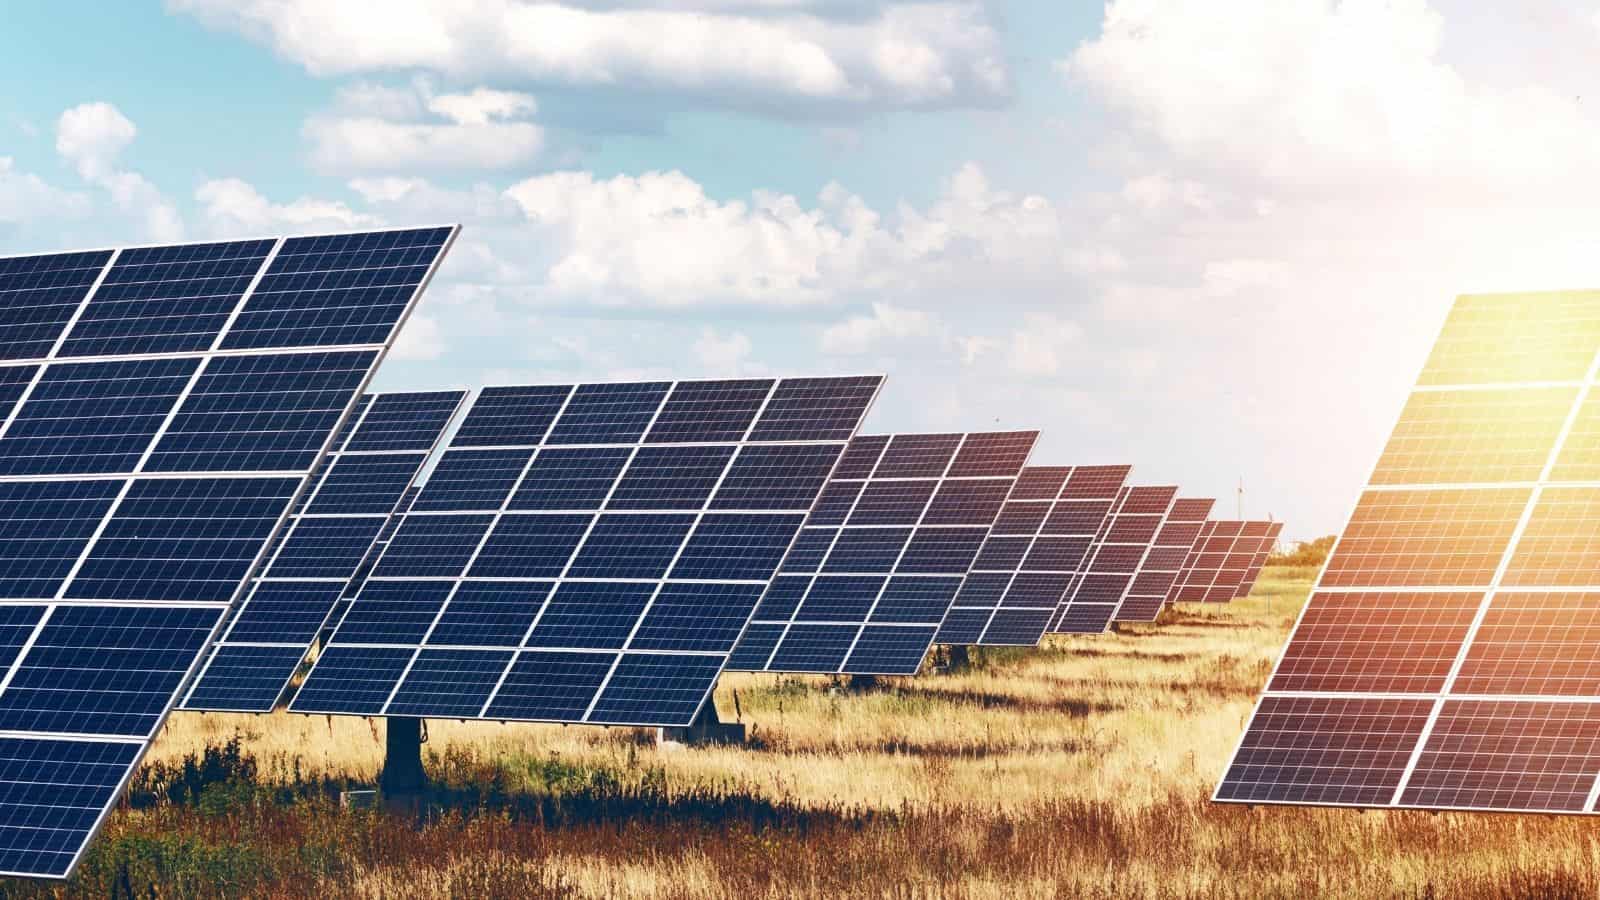 Energia pulita per tutelare le famiglie: nasce il primo parco solare